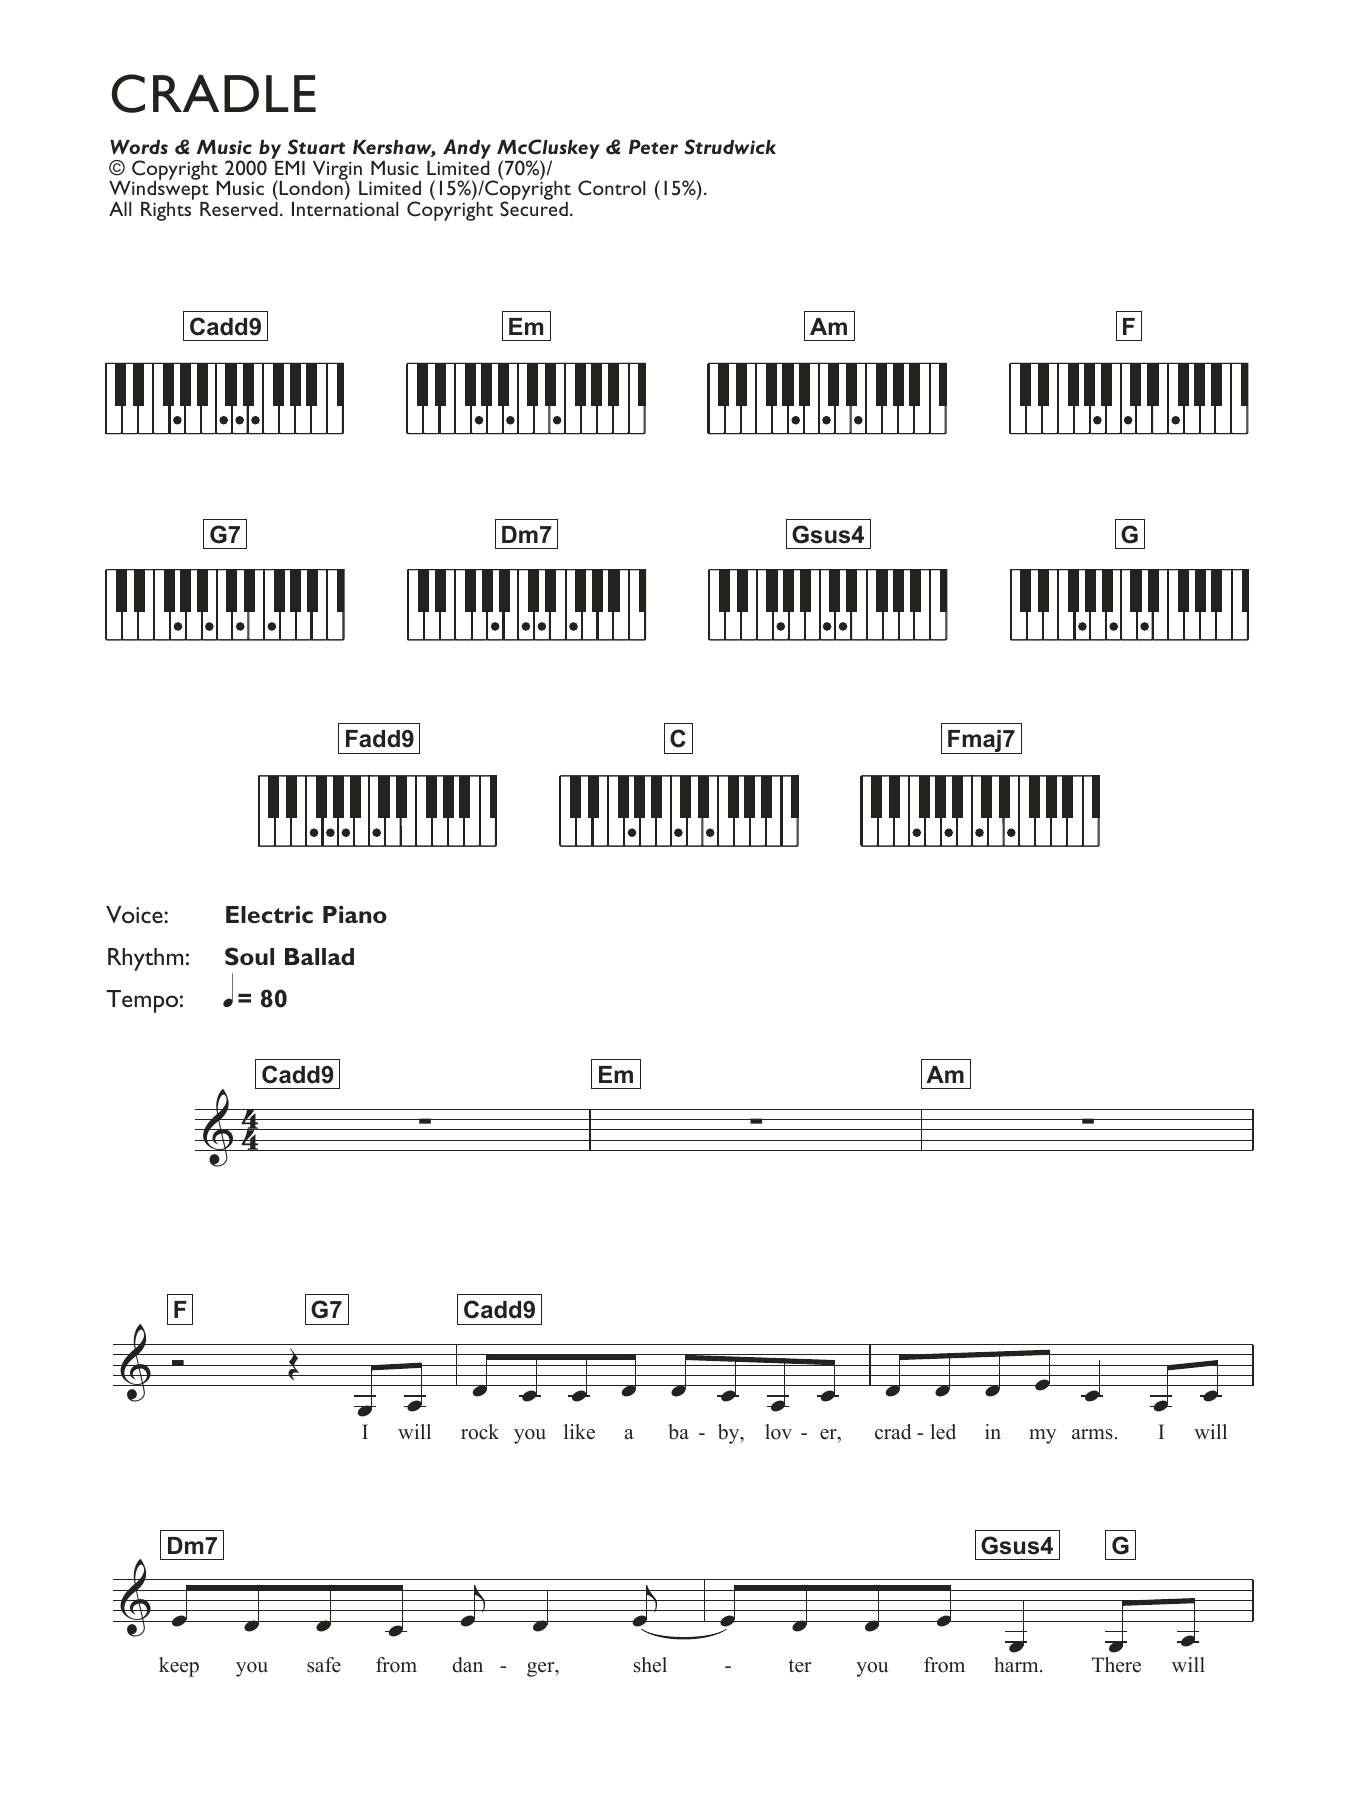 Atomic Kitten Cradle Sheet Music Notes & Chords for Keyboard - Download or Print PDF